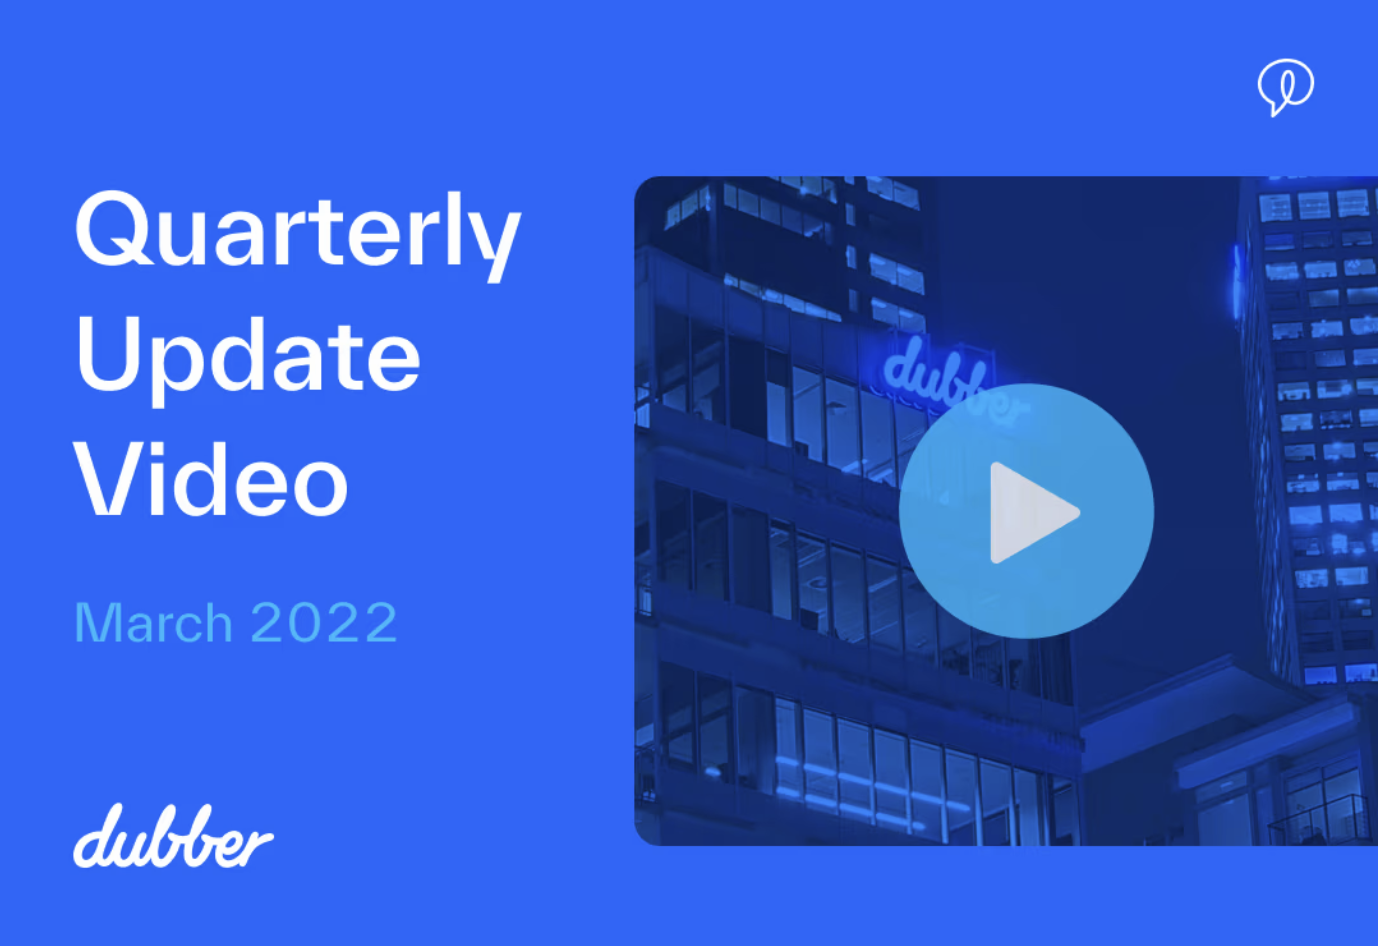 March 2022 Quarterly Update Video